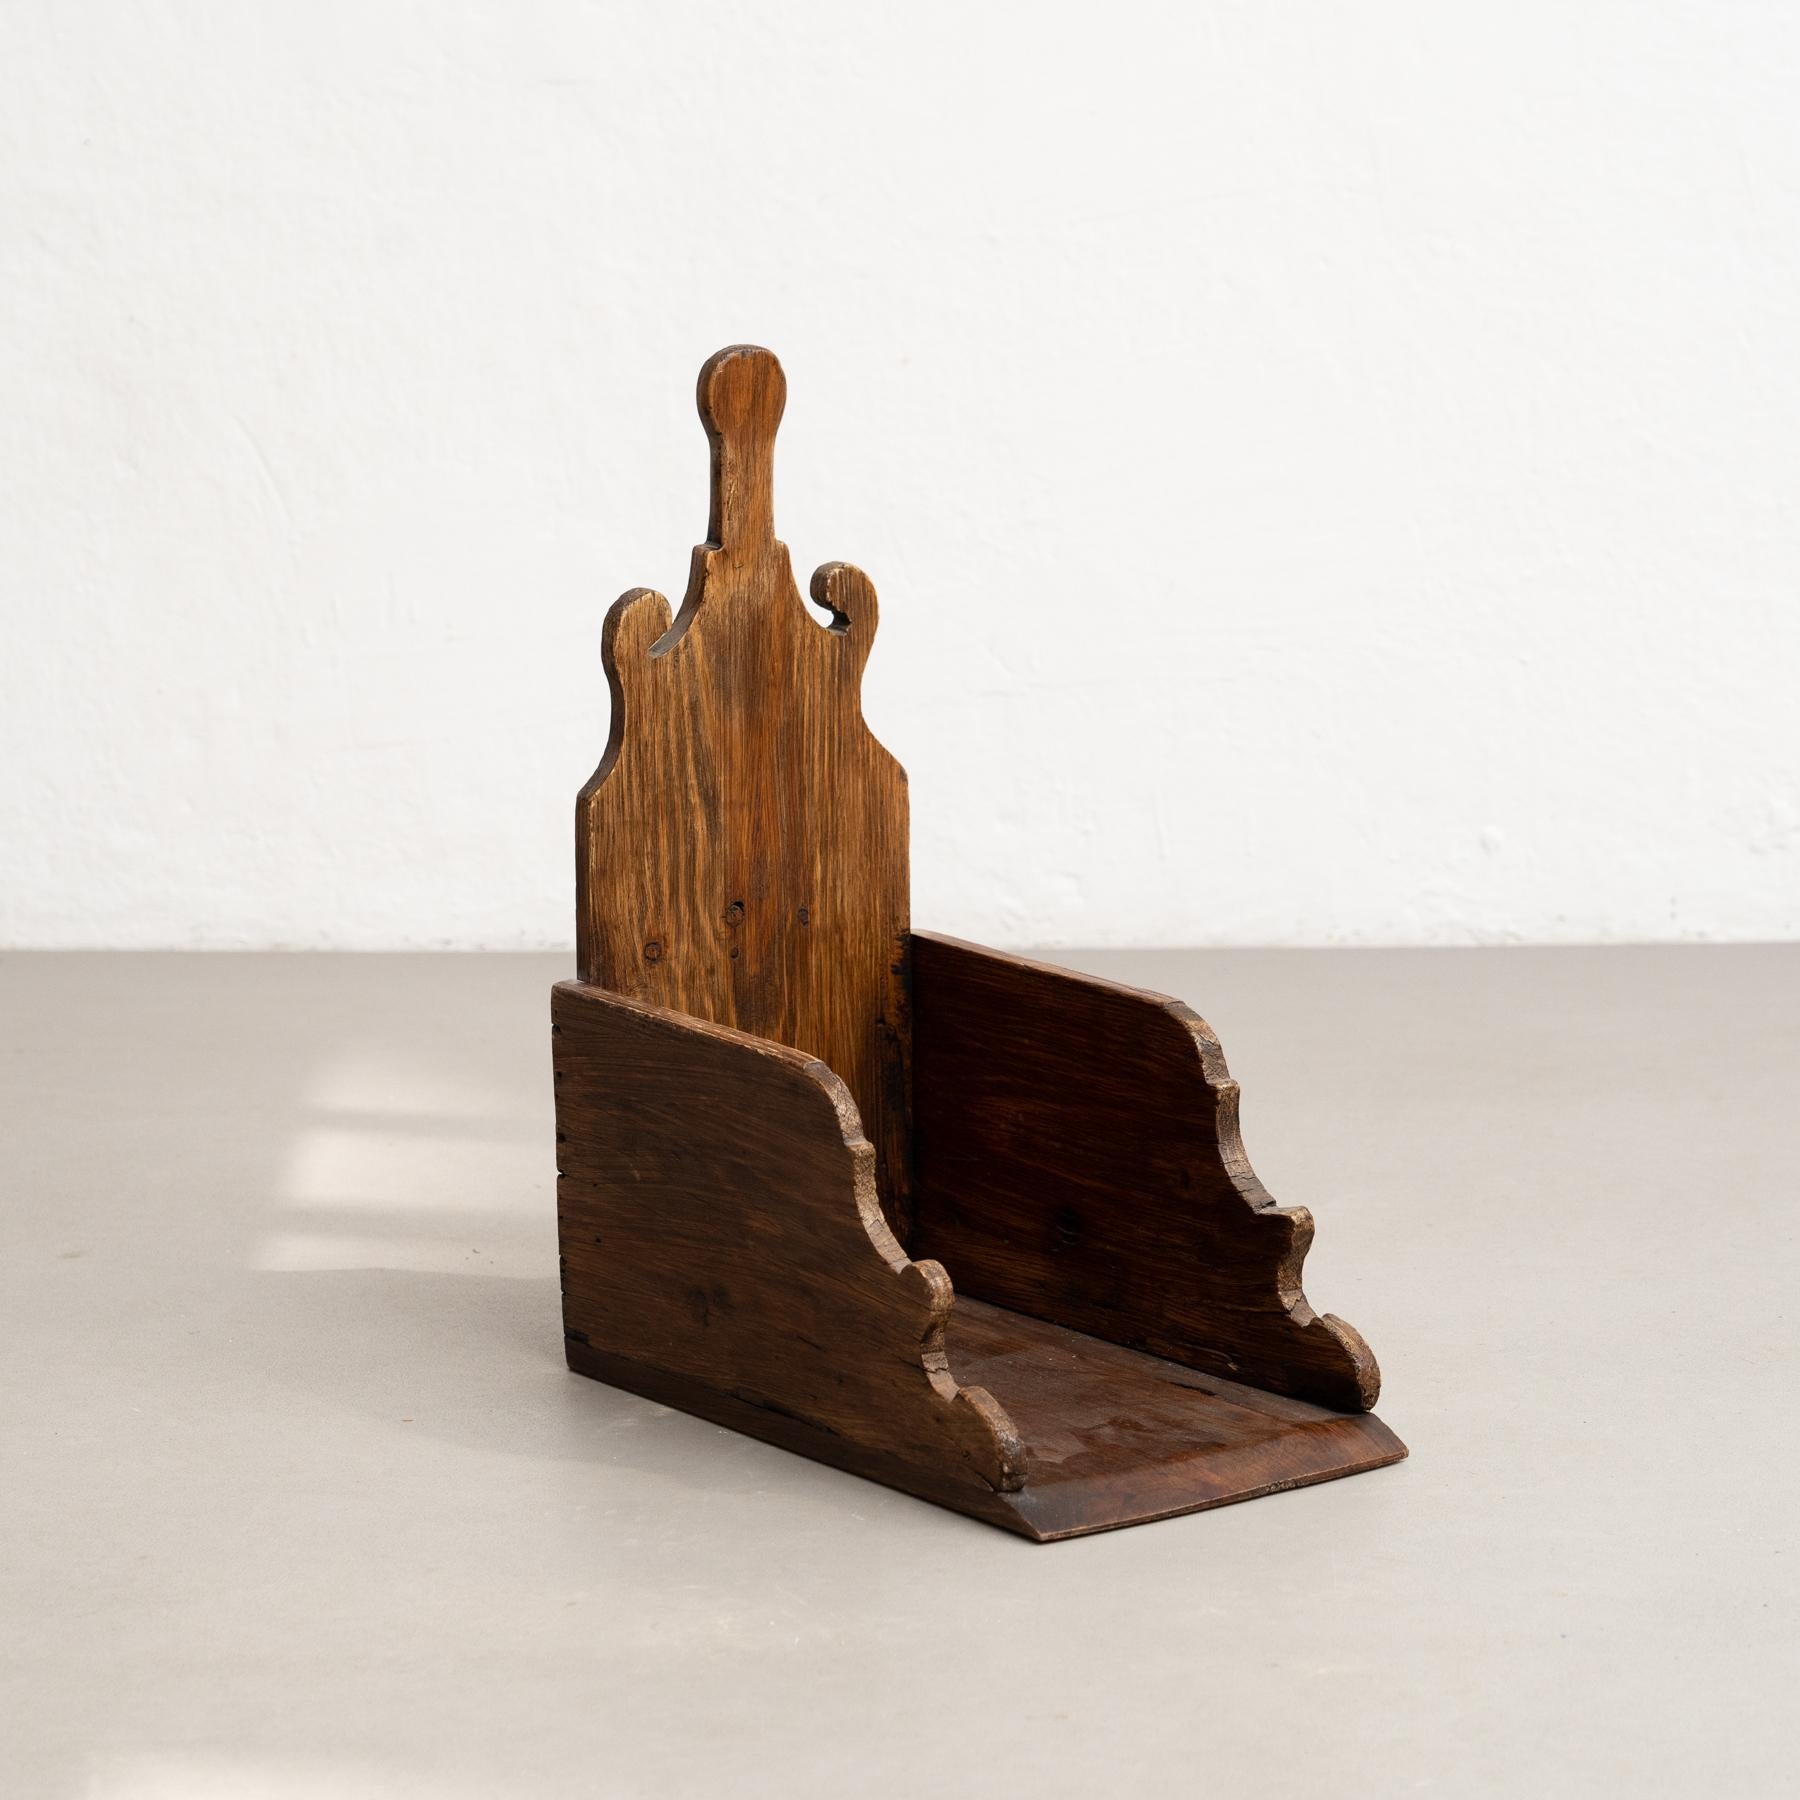 Rustikale skulpturale Holzbroom-Schubladenschale aus dem frühen 20. Jahrhundert

Von einem unbekannten Hersteller in Frankreich.

Im Originalzustand, der eine schöne Patina aufweist.